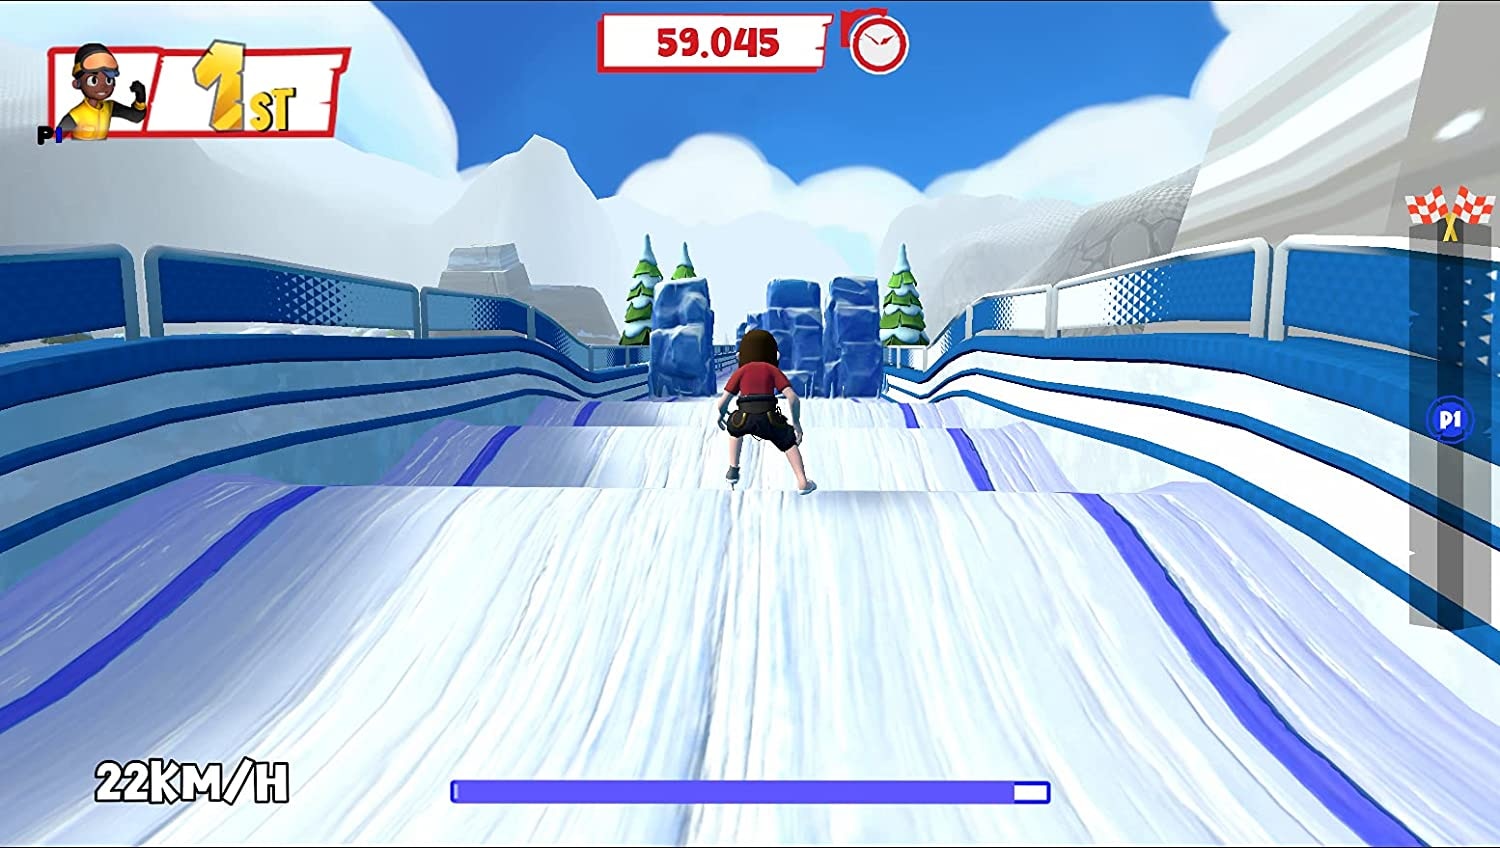 Astragon Spielesoftware »Instant Sports Winter Games«, Nintendo Switch  jetzt online bei OTTO